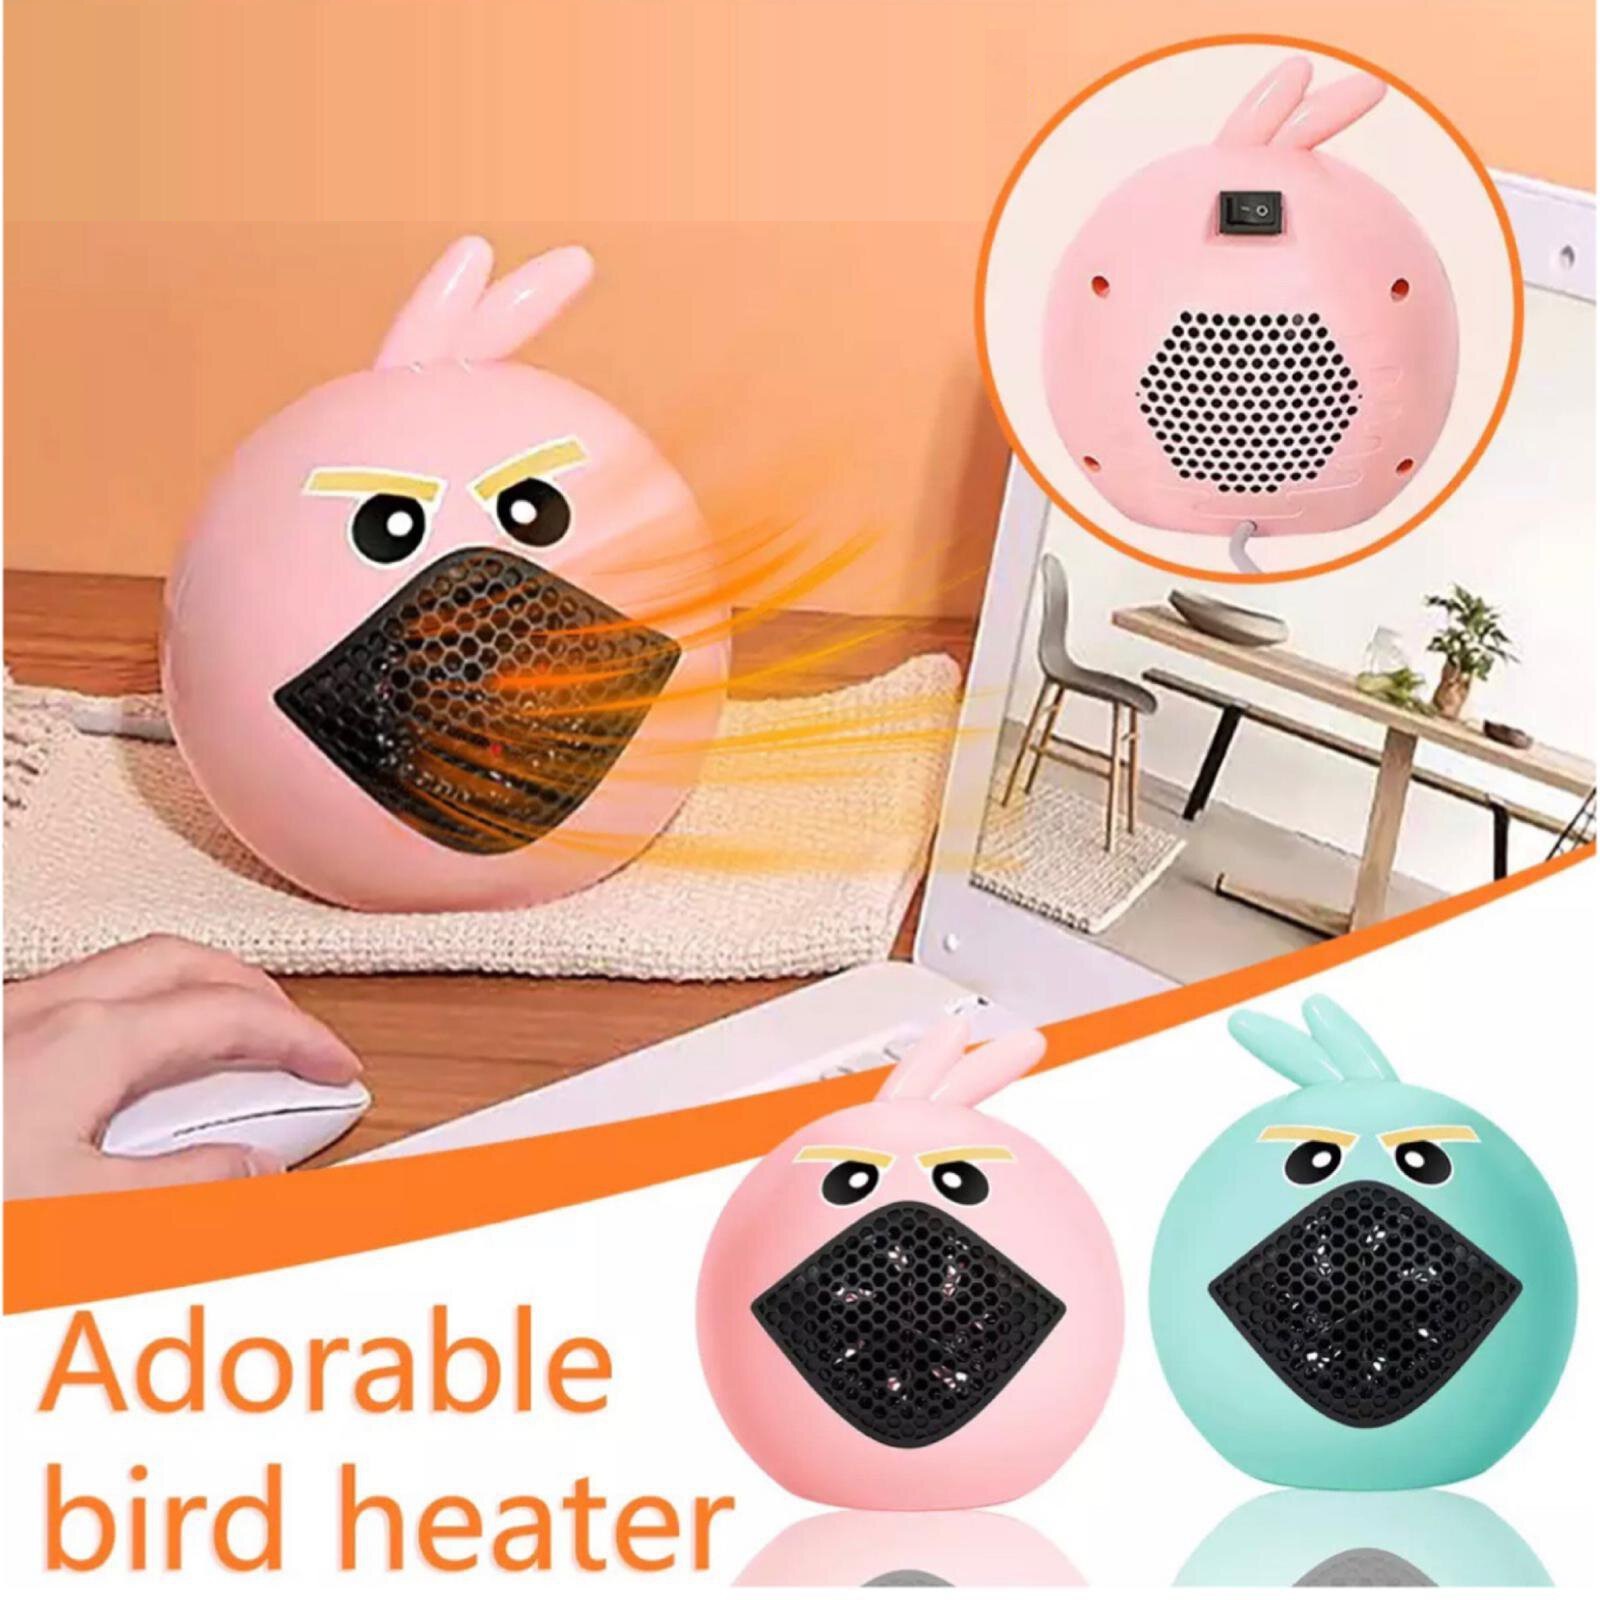 Adorable Bird Electric Heater